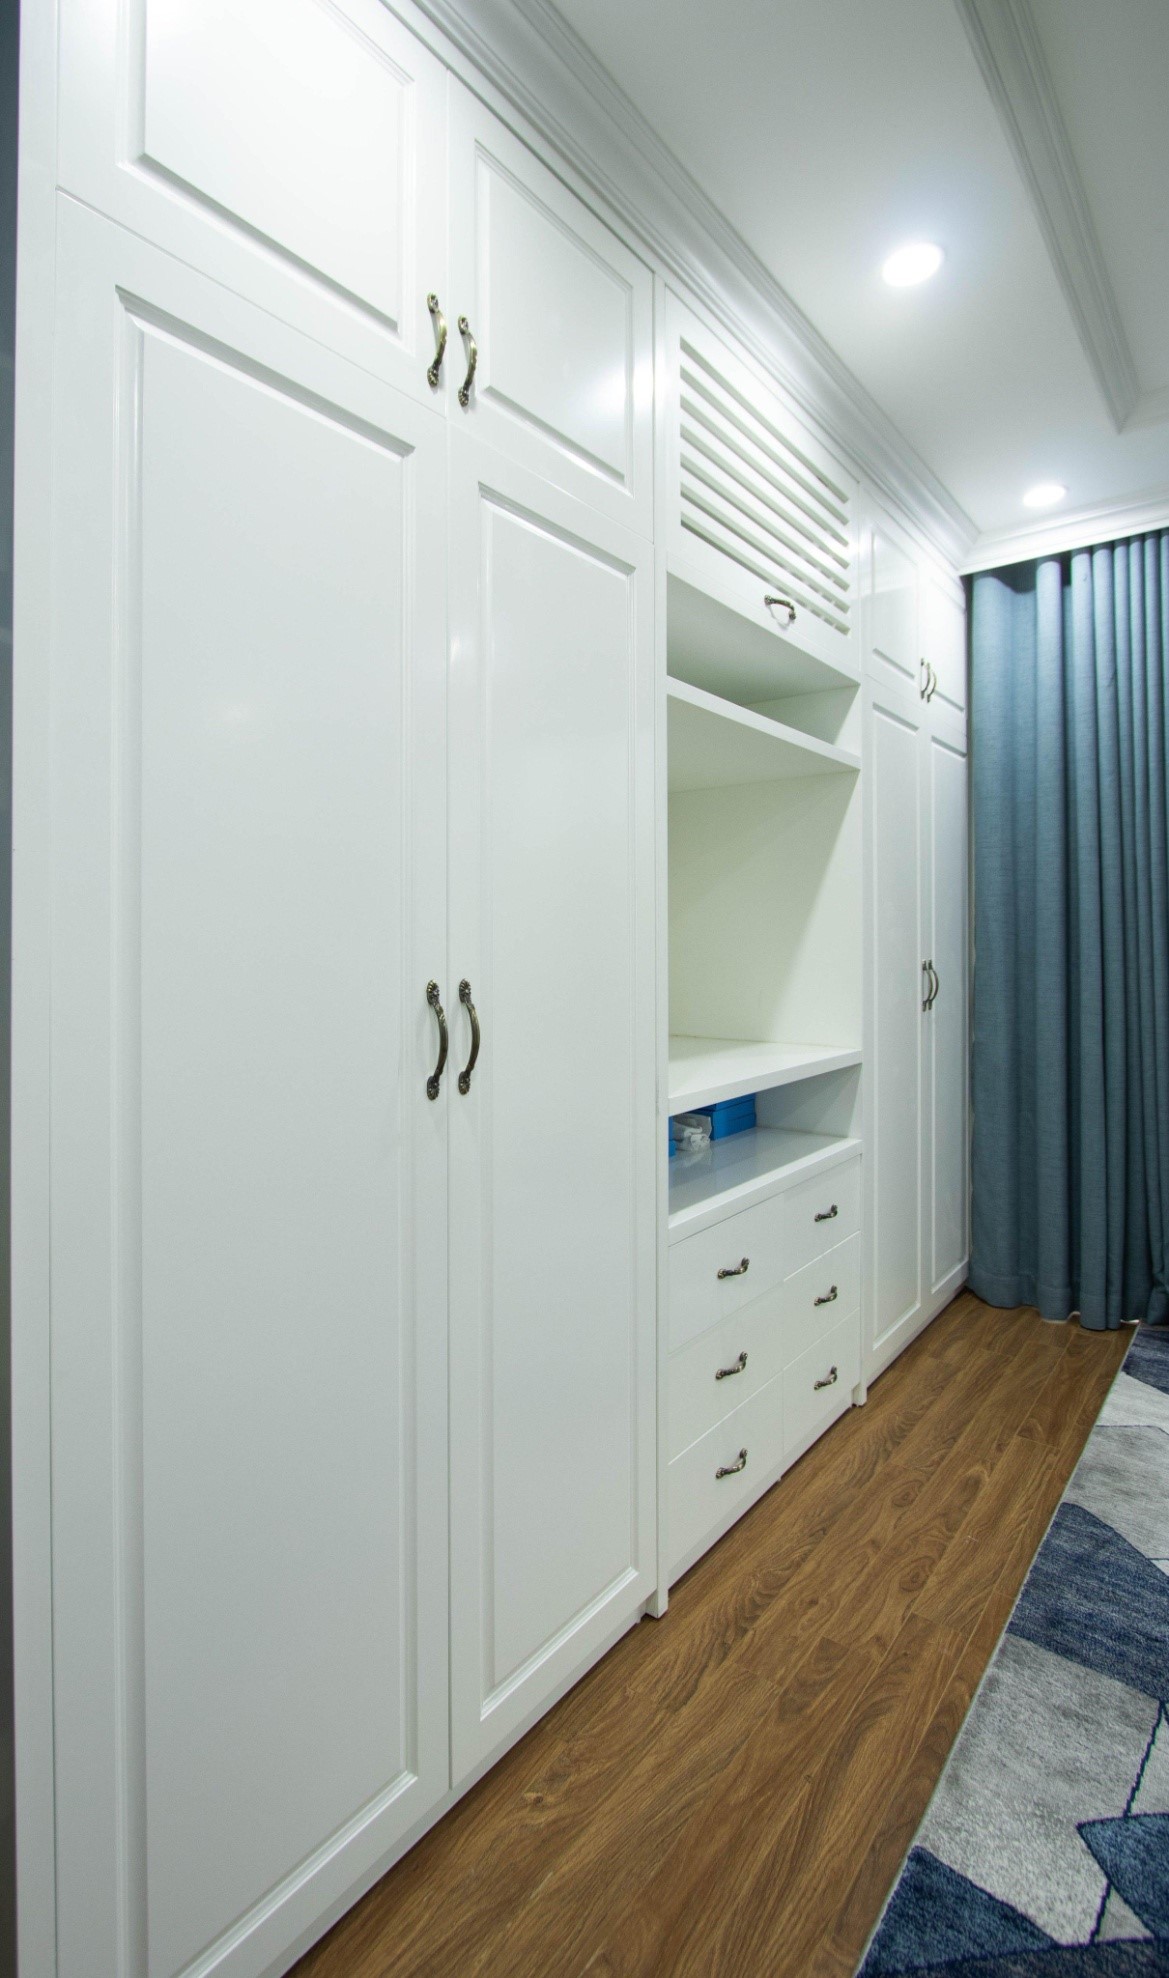 Hệ tủ màu trắng cao kịch trần cung cấp không gian lưu trữ thoải mái, đồng thời tạo cảm giác thoáng đãng hơn.